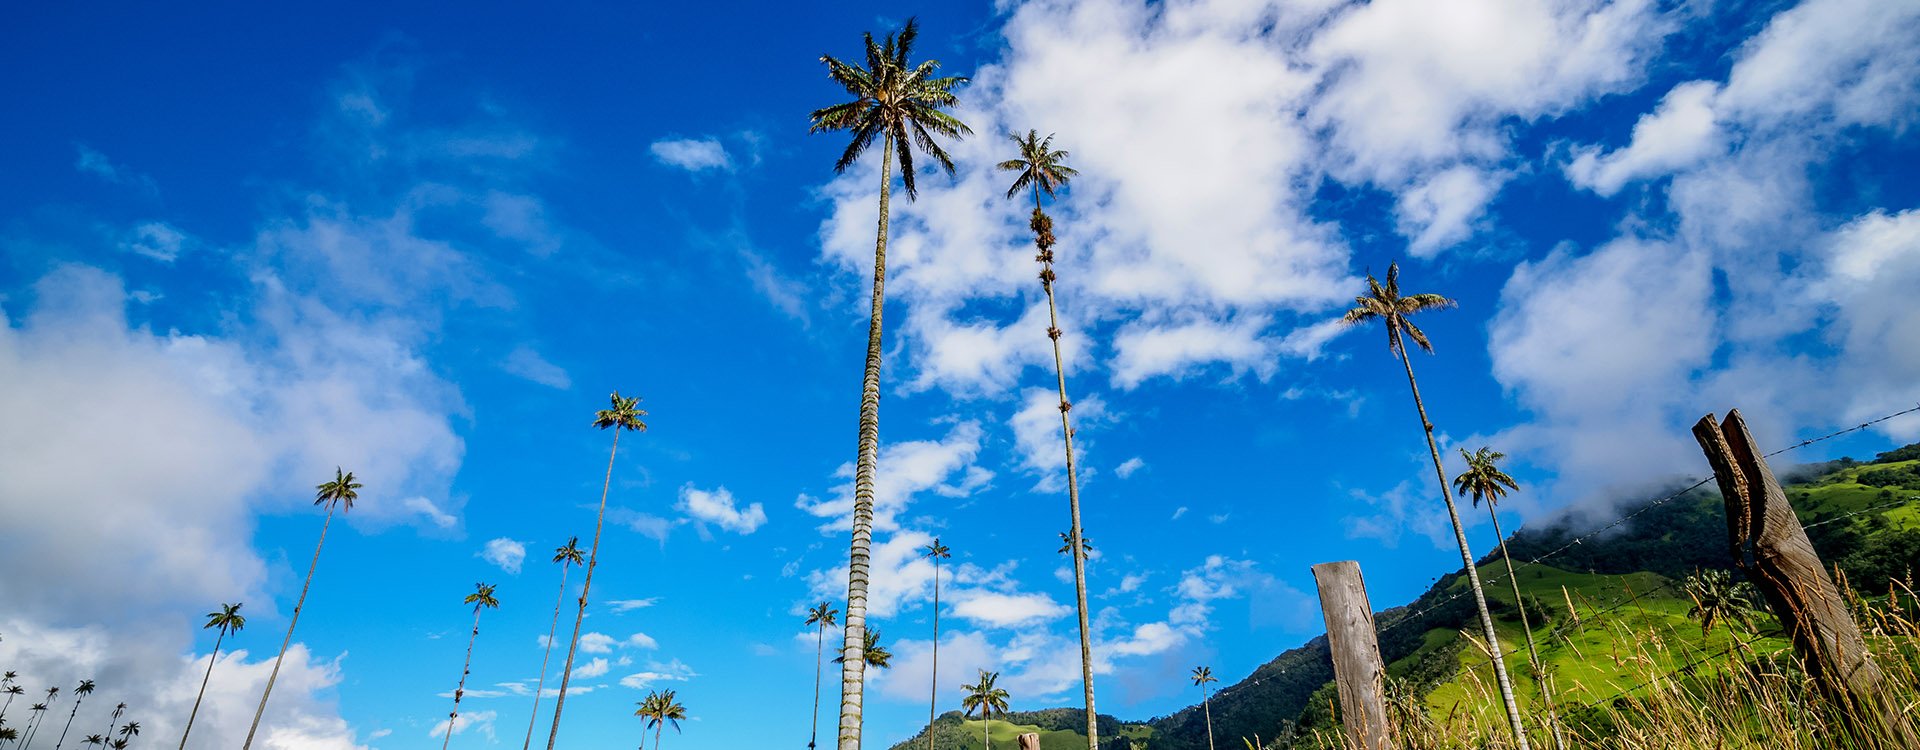 Wax Palms (Ceroxylon quindiuense), Cocora Valley, Salento, Quindio Department, Colombia